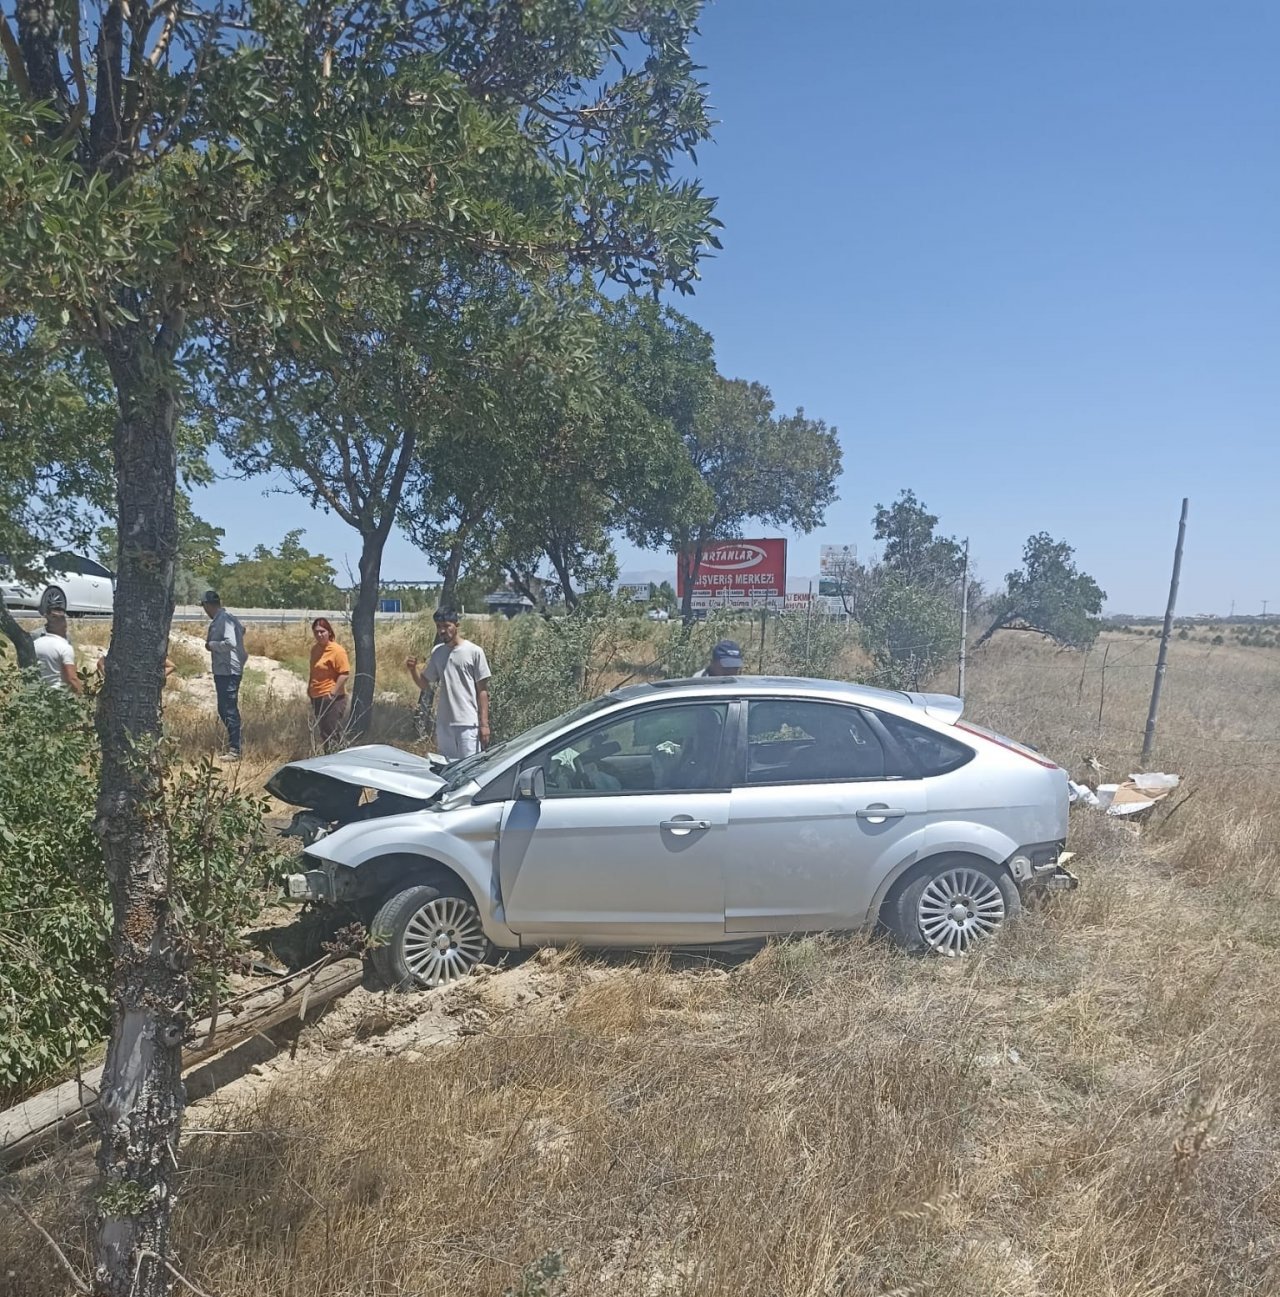 Otomobil ağaca çarptı: 5 yaralı